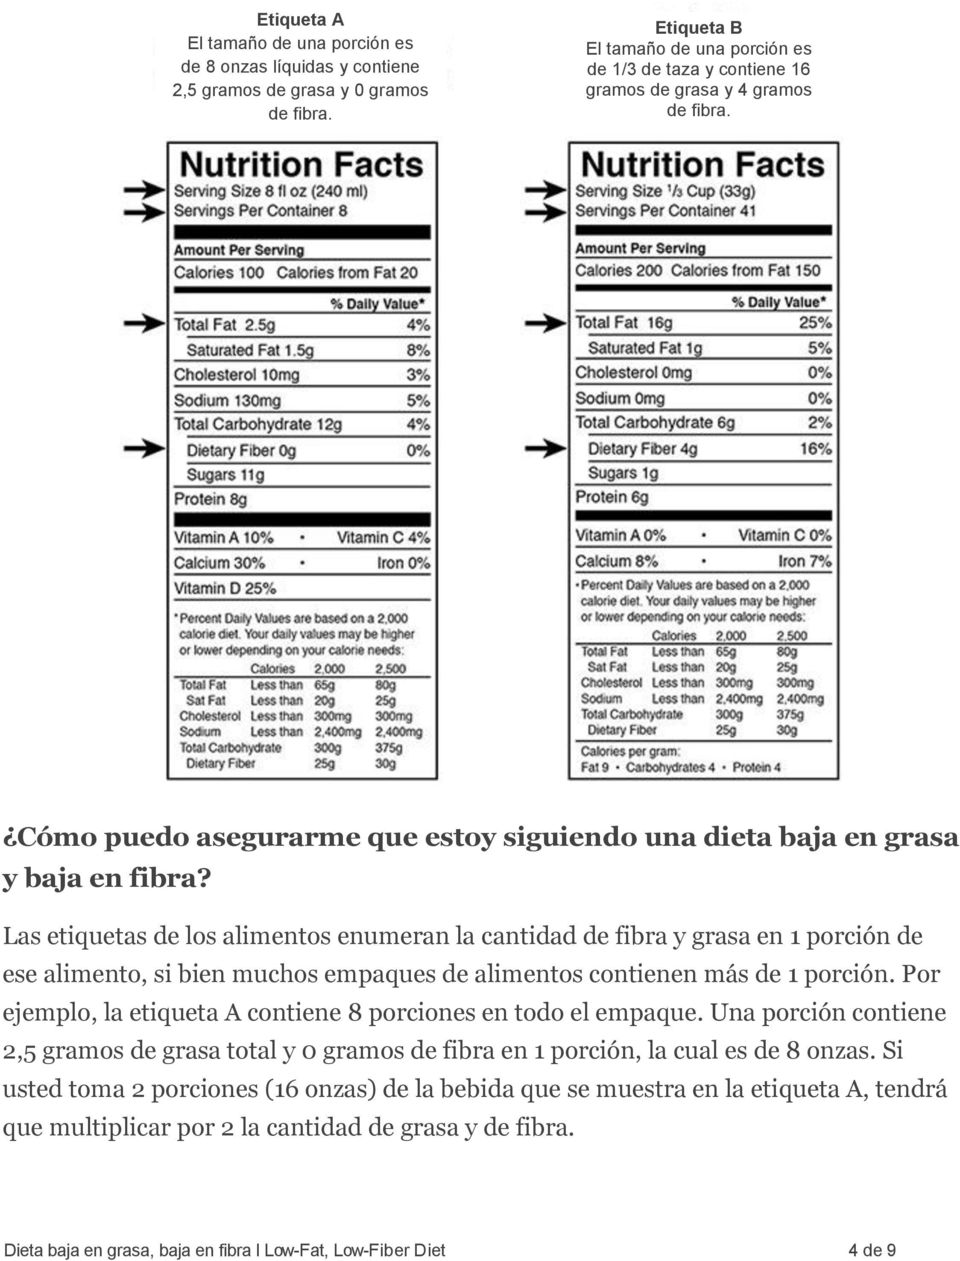 Las etiquetas de los alimentos enumeran la cantidad de fibra y grasa en 1 porción de ese alimento, si bien muchos empaques de alimentos contienen más de 1 porción.